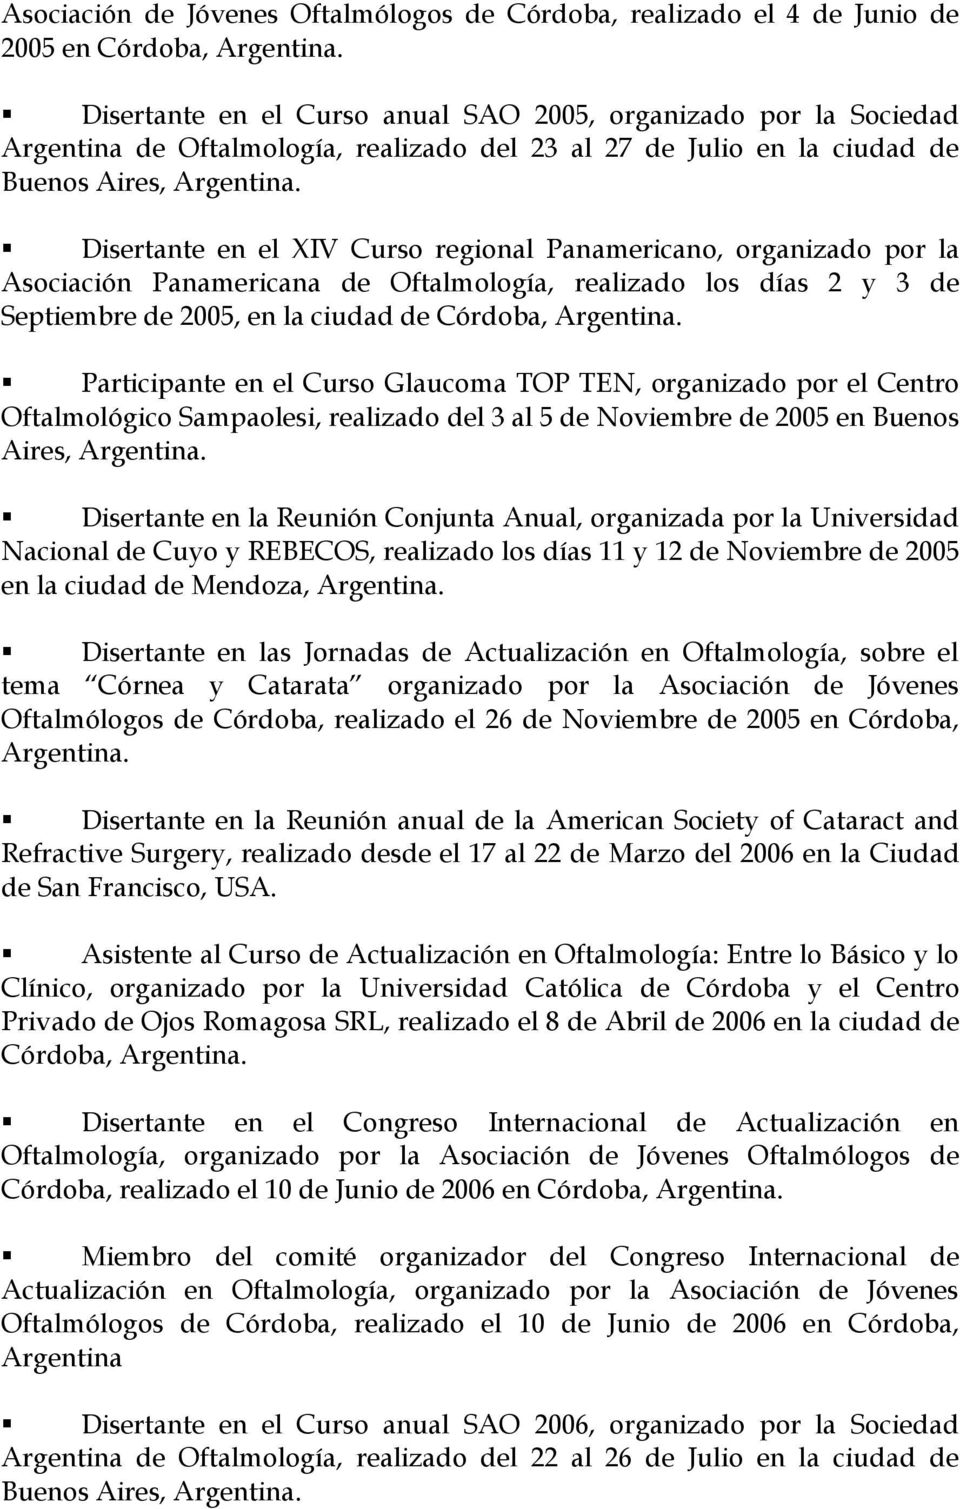 2005, en la ciudad de Córdoba, Participante en el Curso Glaucoma TOP TEN, organizado por el Centro Oftalmológico Sampaolesi, realizado del 3 al 5 de Noviembre de 2005 en Buenos Aires, Disertante en